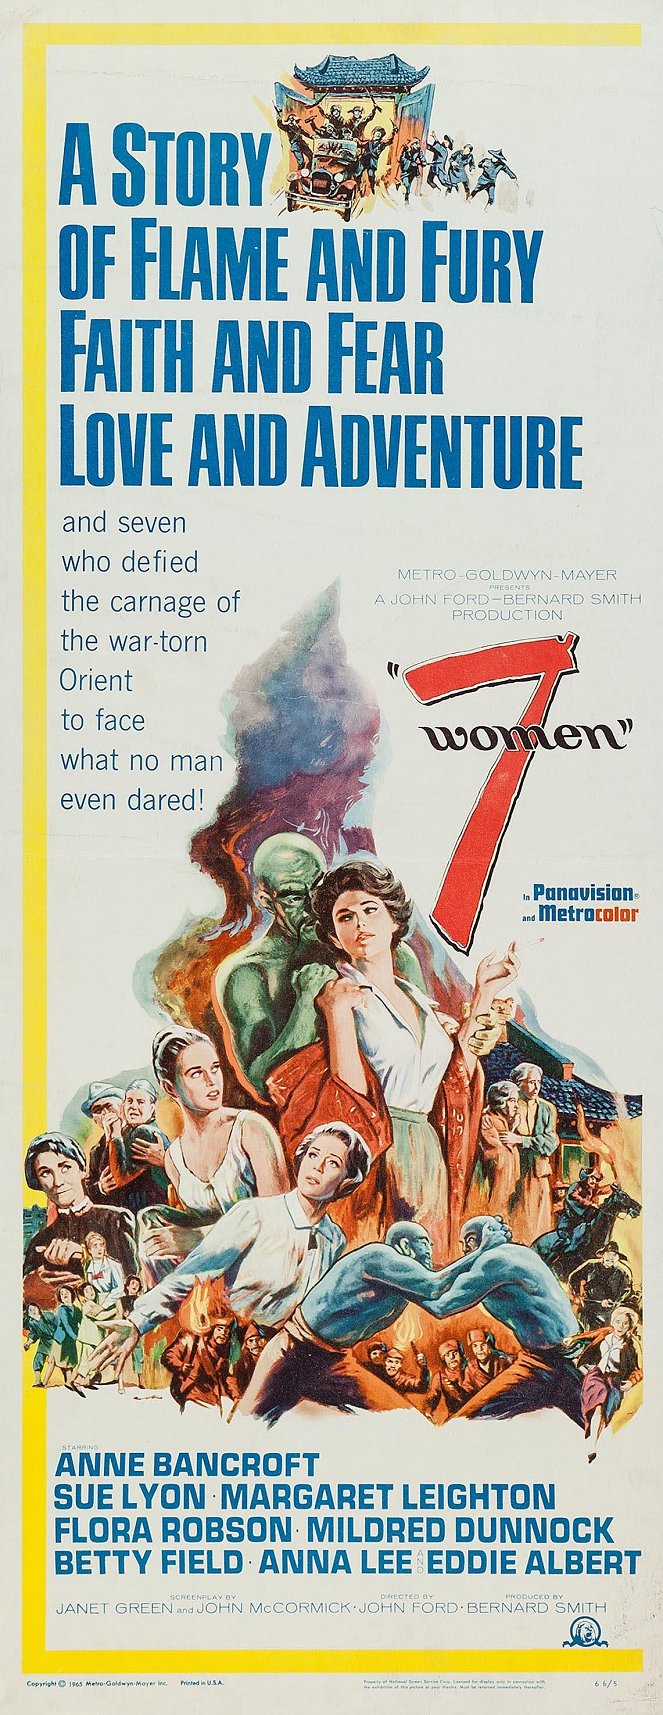 7 Women - Cartazes